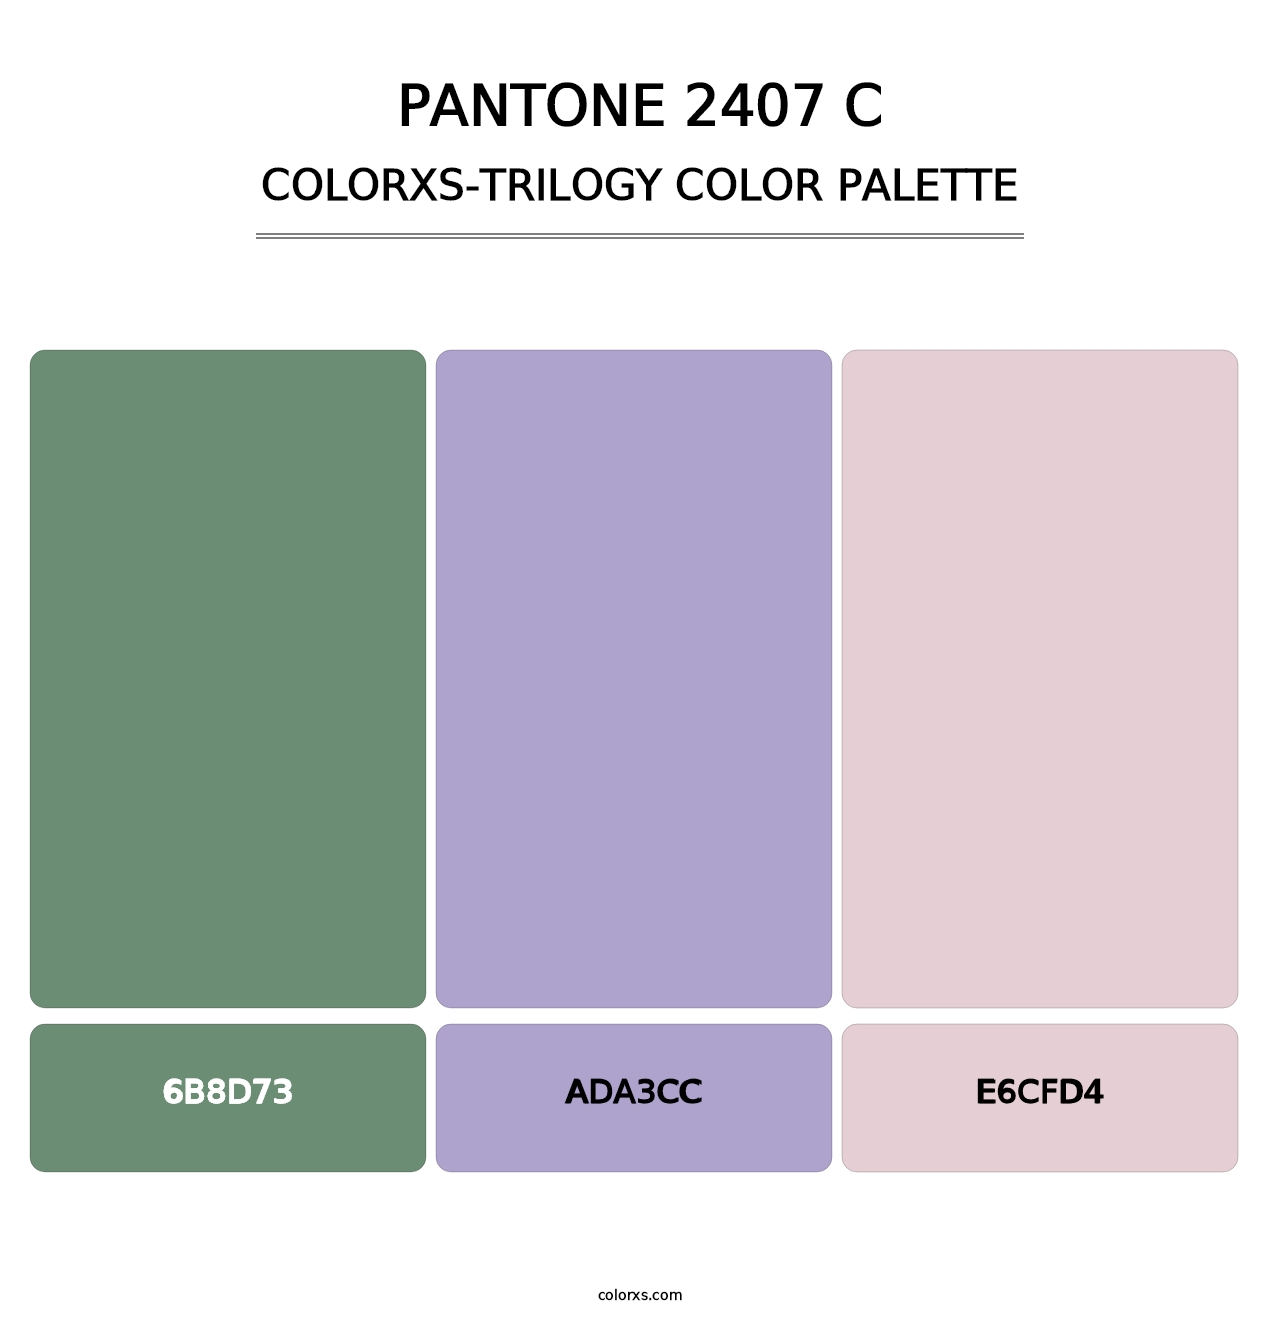 PANTONE 2407 C - Colorxs Trilogy Palette